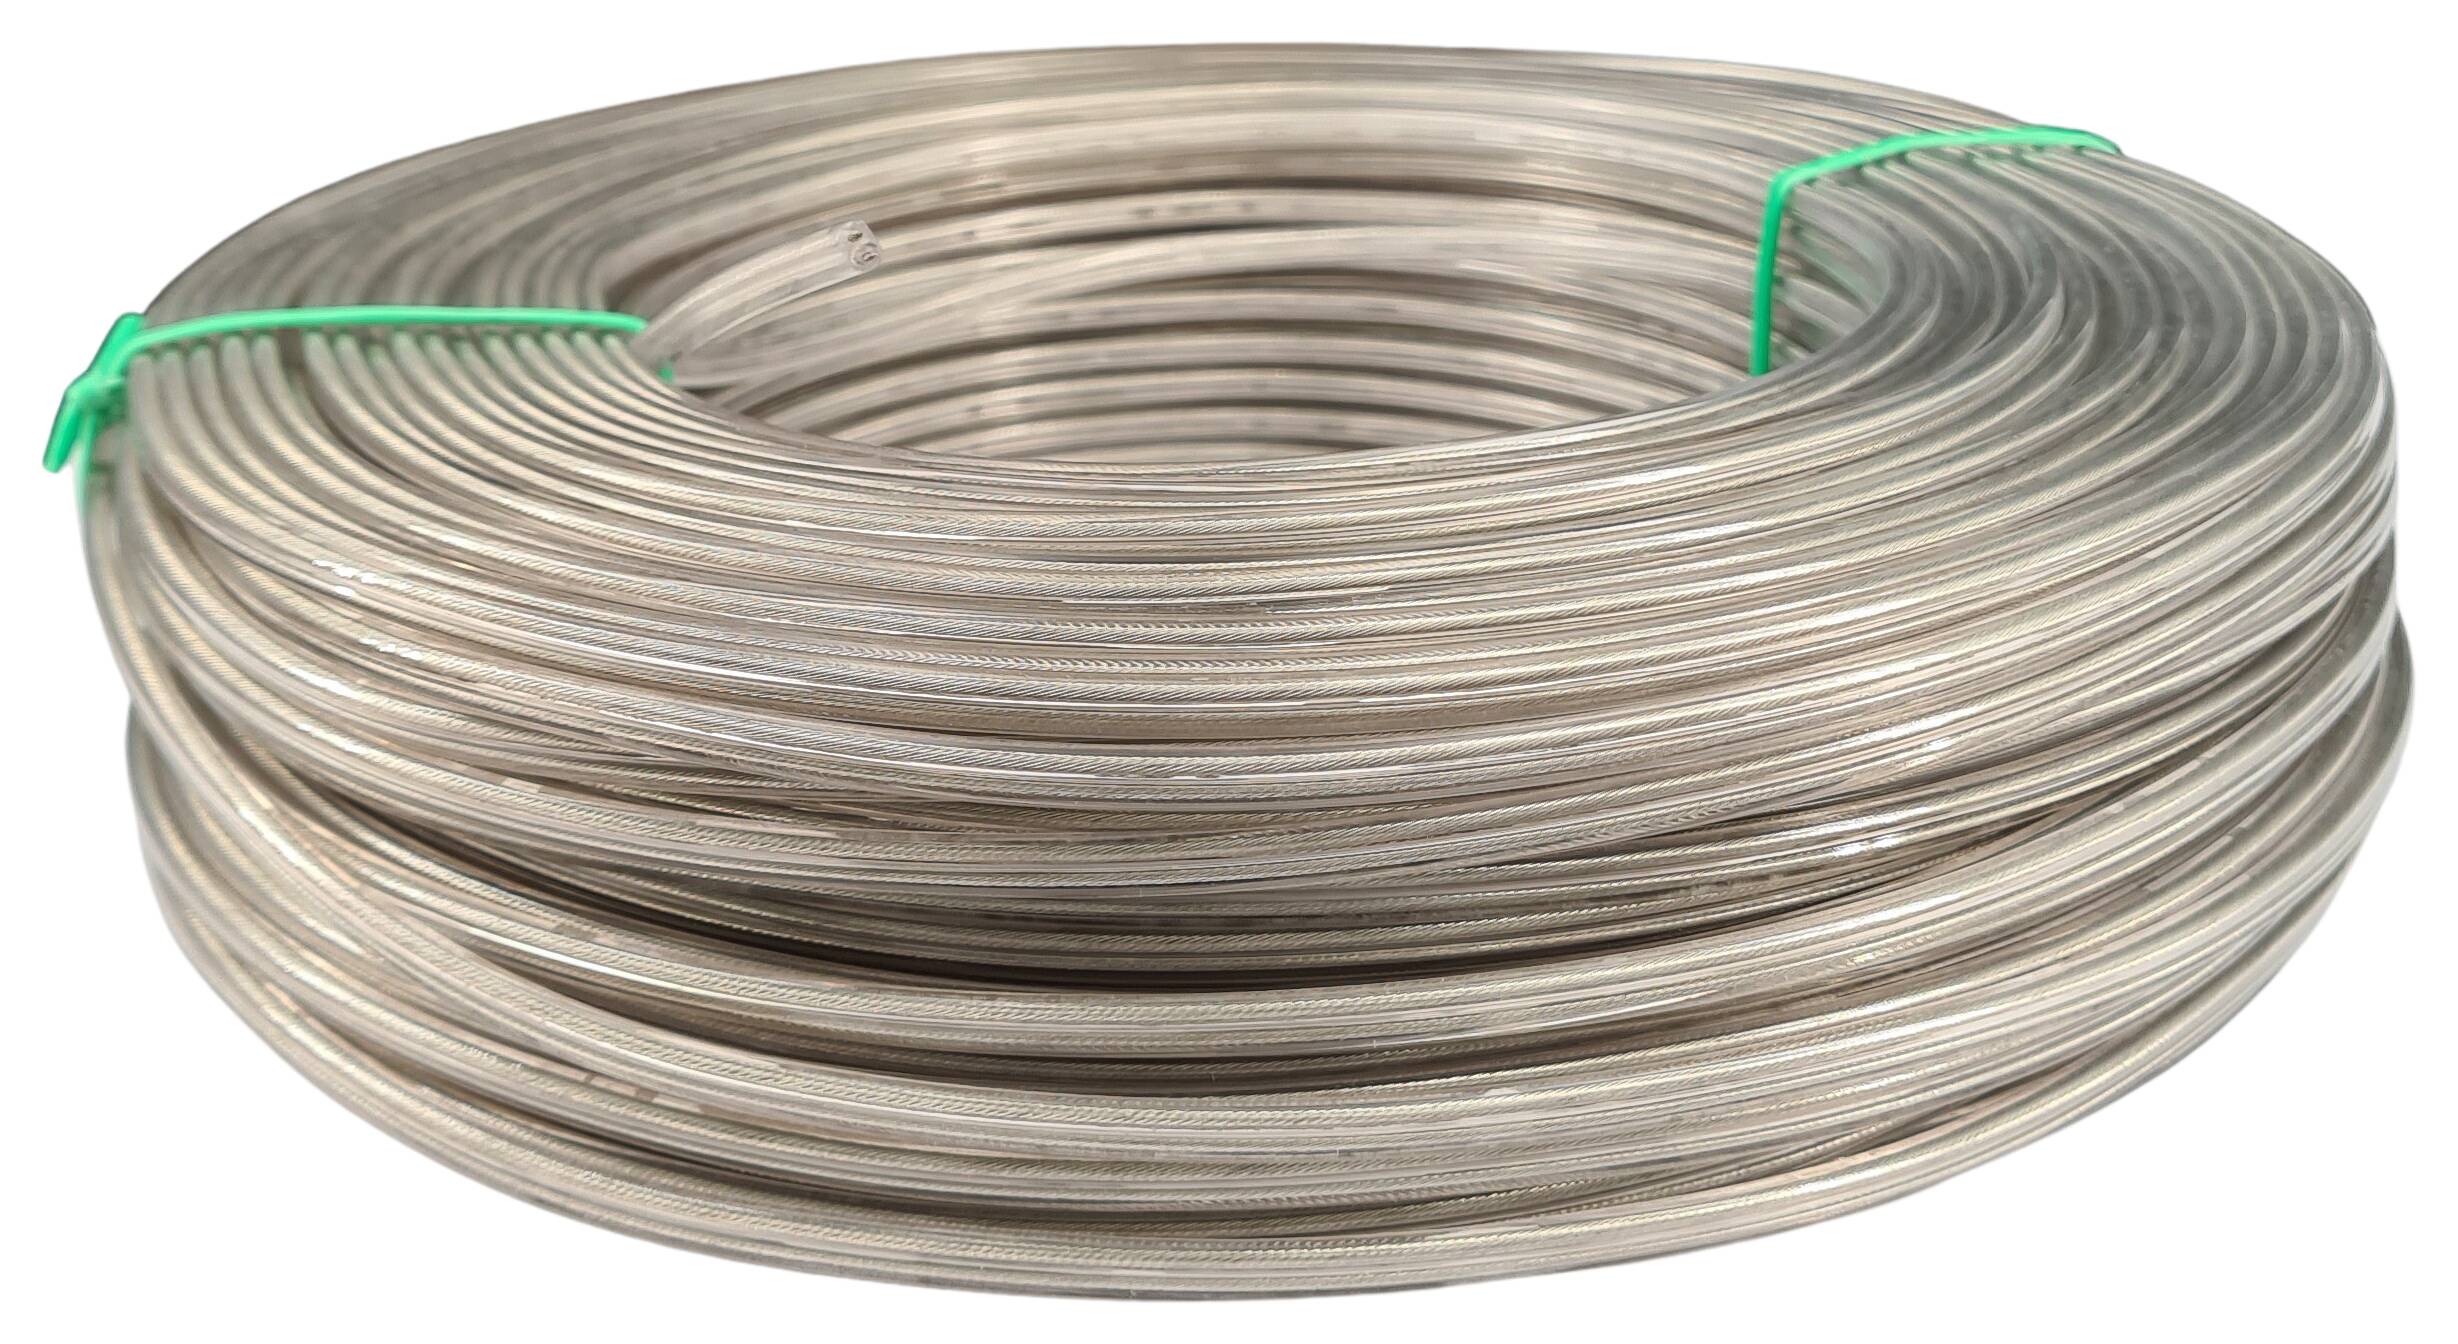 Kabel 2x0,75 flach PVC/PVC 500 mtr. Spule transparent